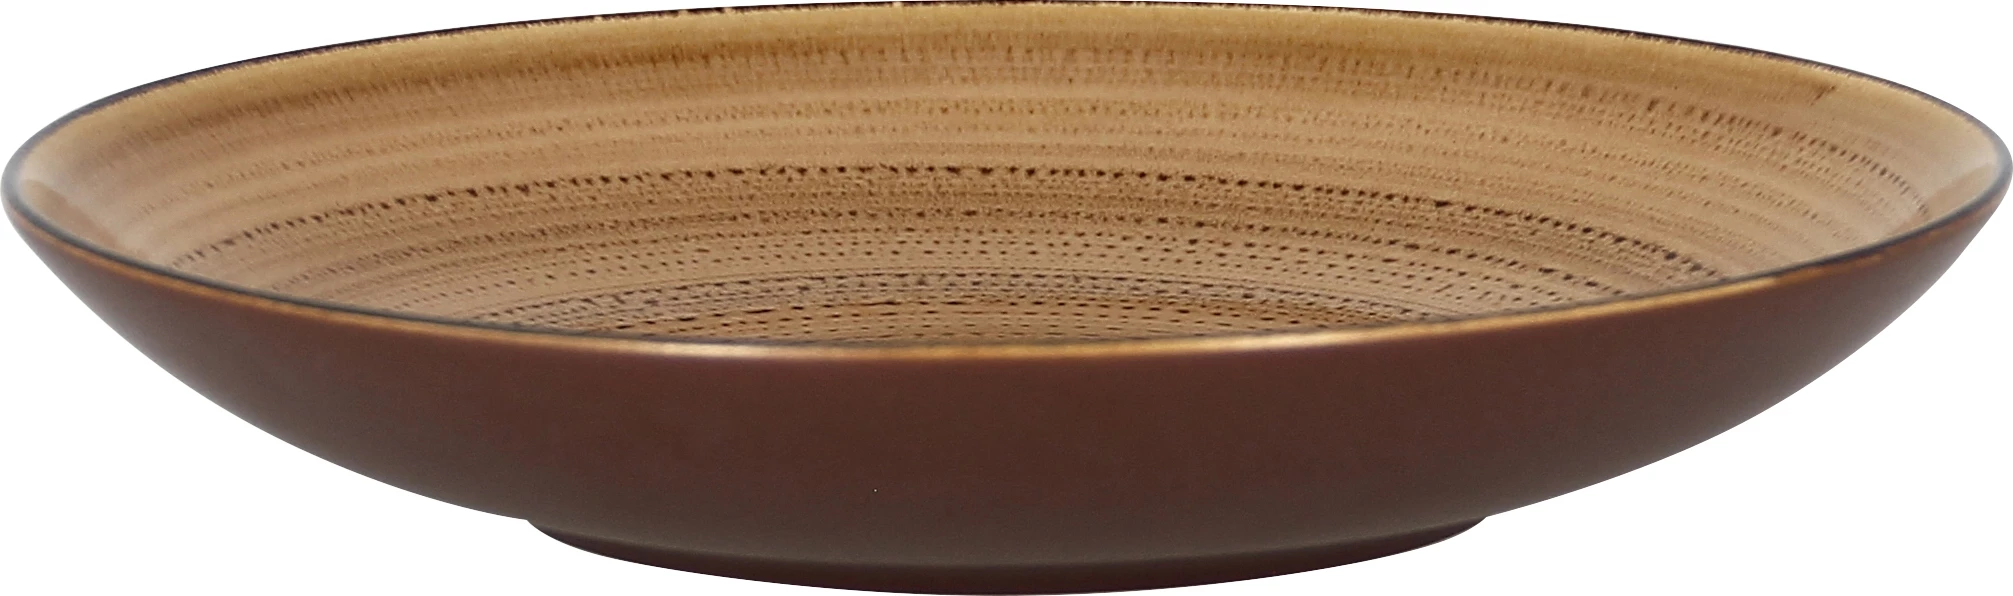 RAK Twirl tallerken, dyb, brun, ø23 cm